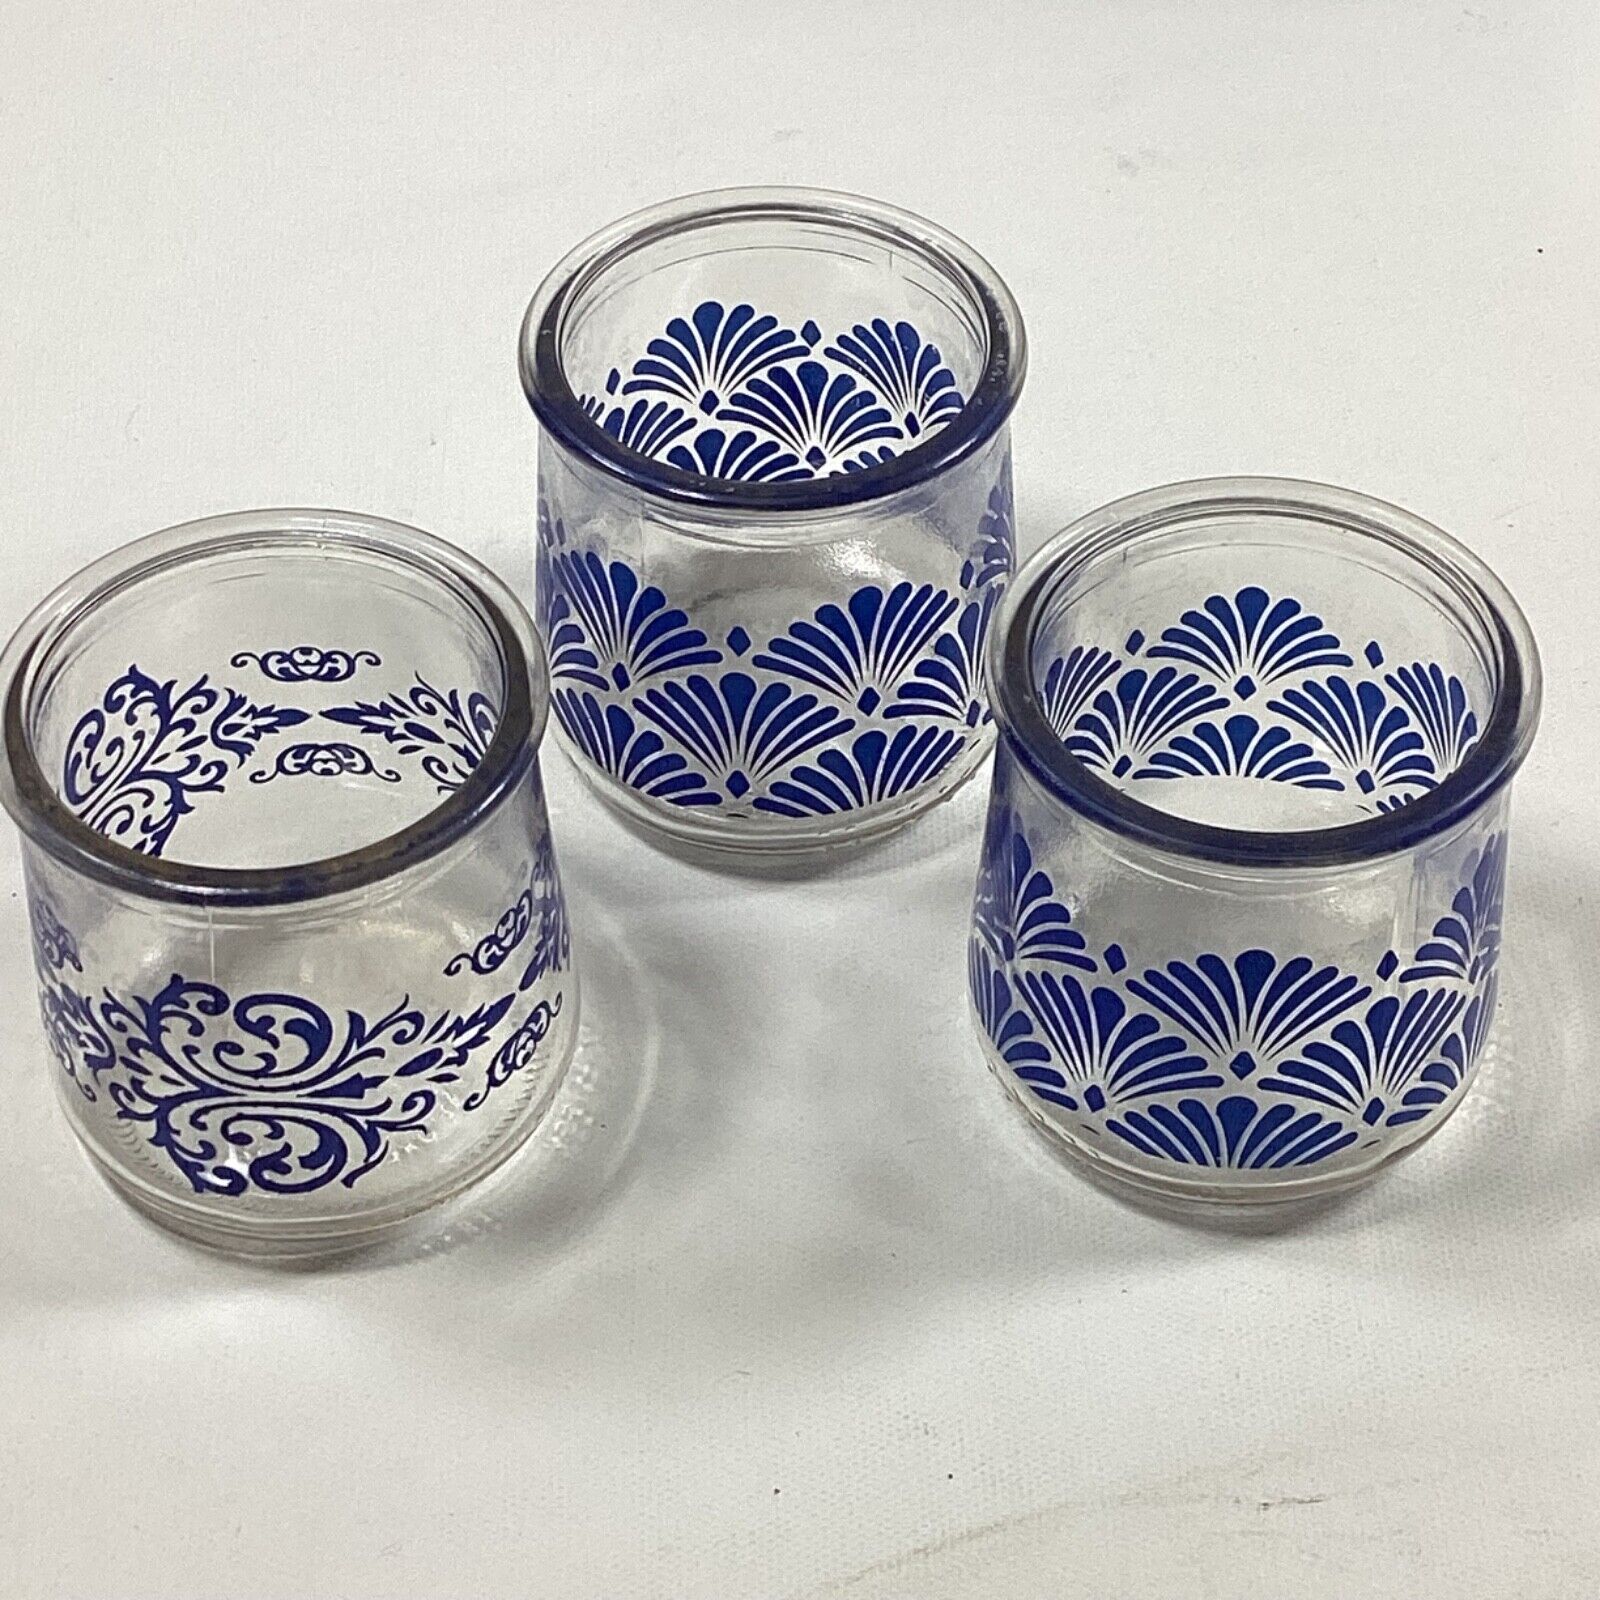 Vtg 5oz Oui Yogurt Jar Blue Fan Floral Design Pattern Rare Find Lot Of 3 Jars